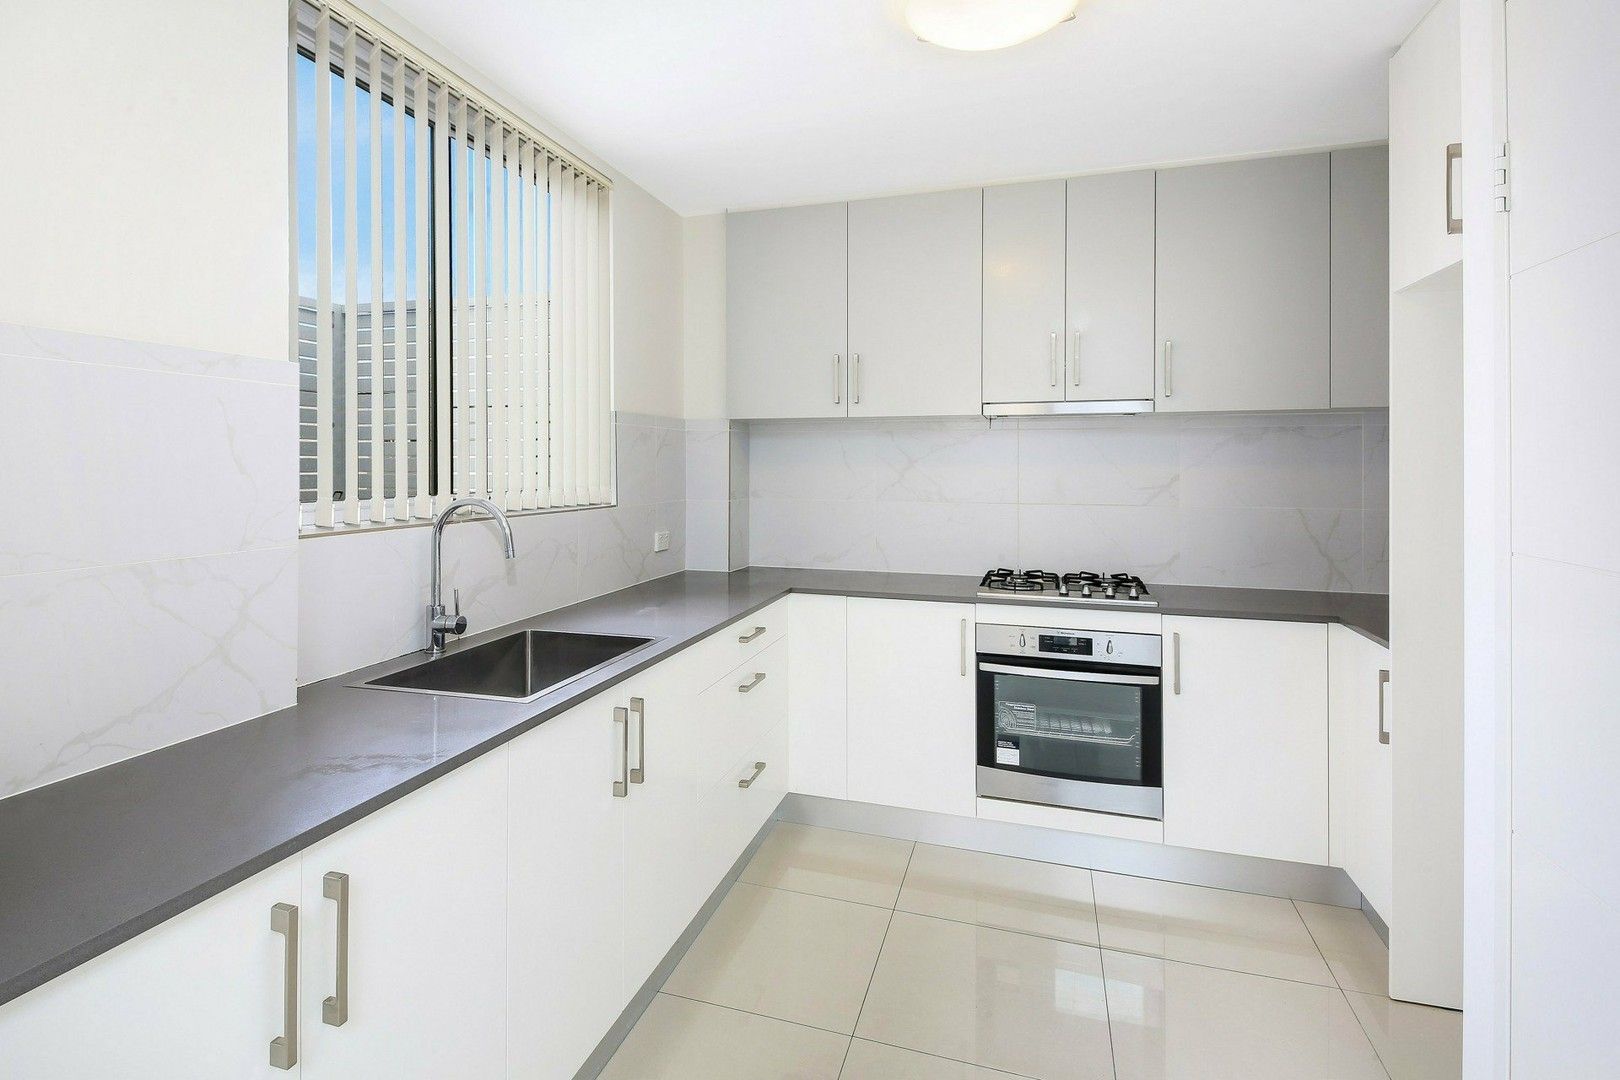 2 bedrooms Apartment / Unit / Flat in 16/84-86 Aurelia Street TOONGABBIE NSW, 2146